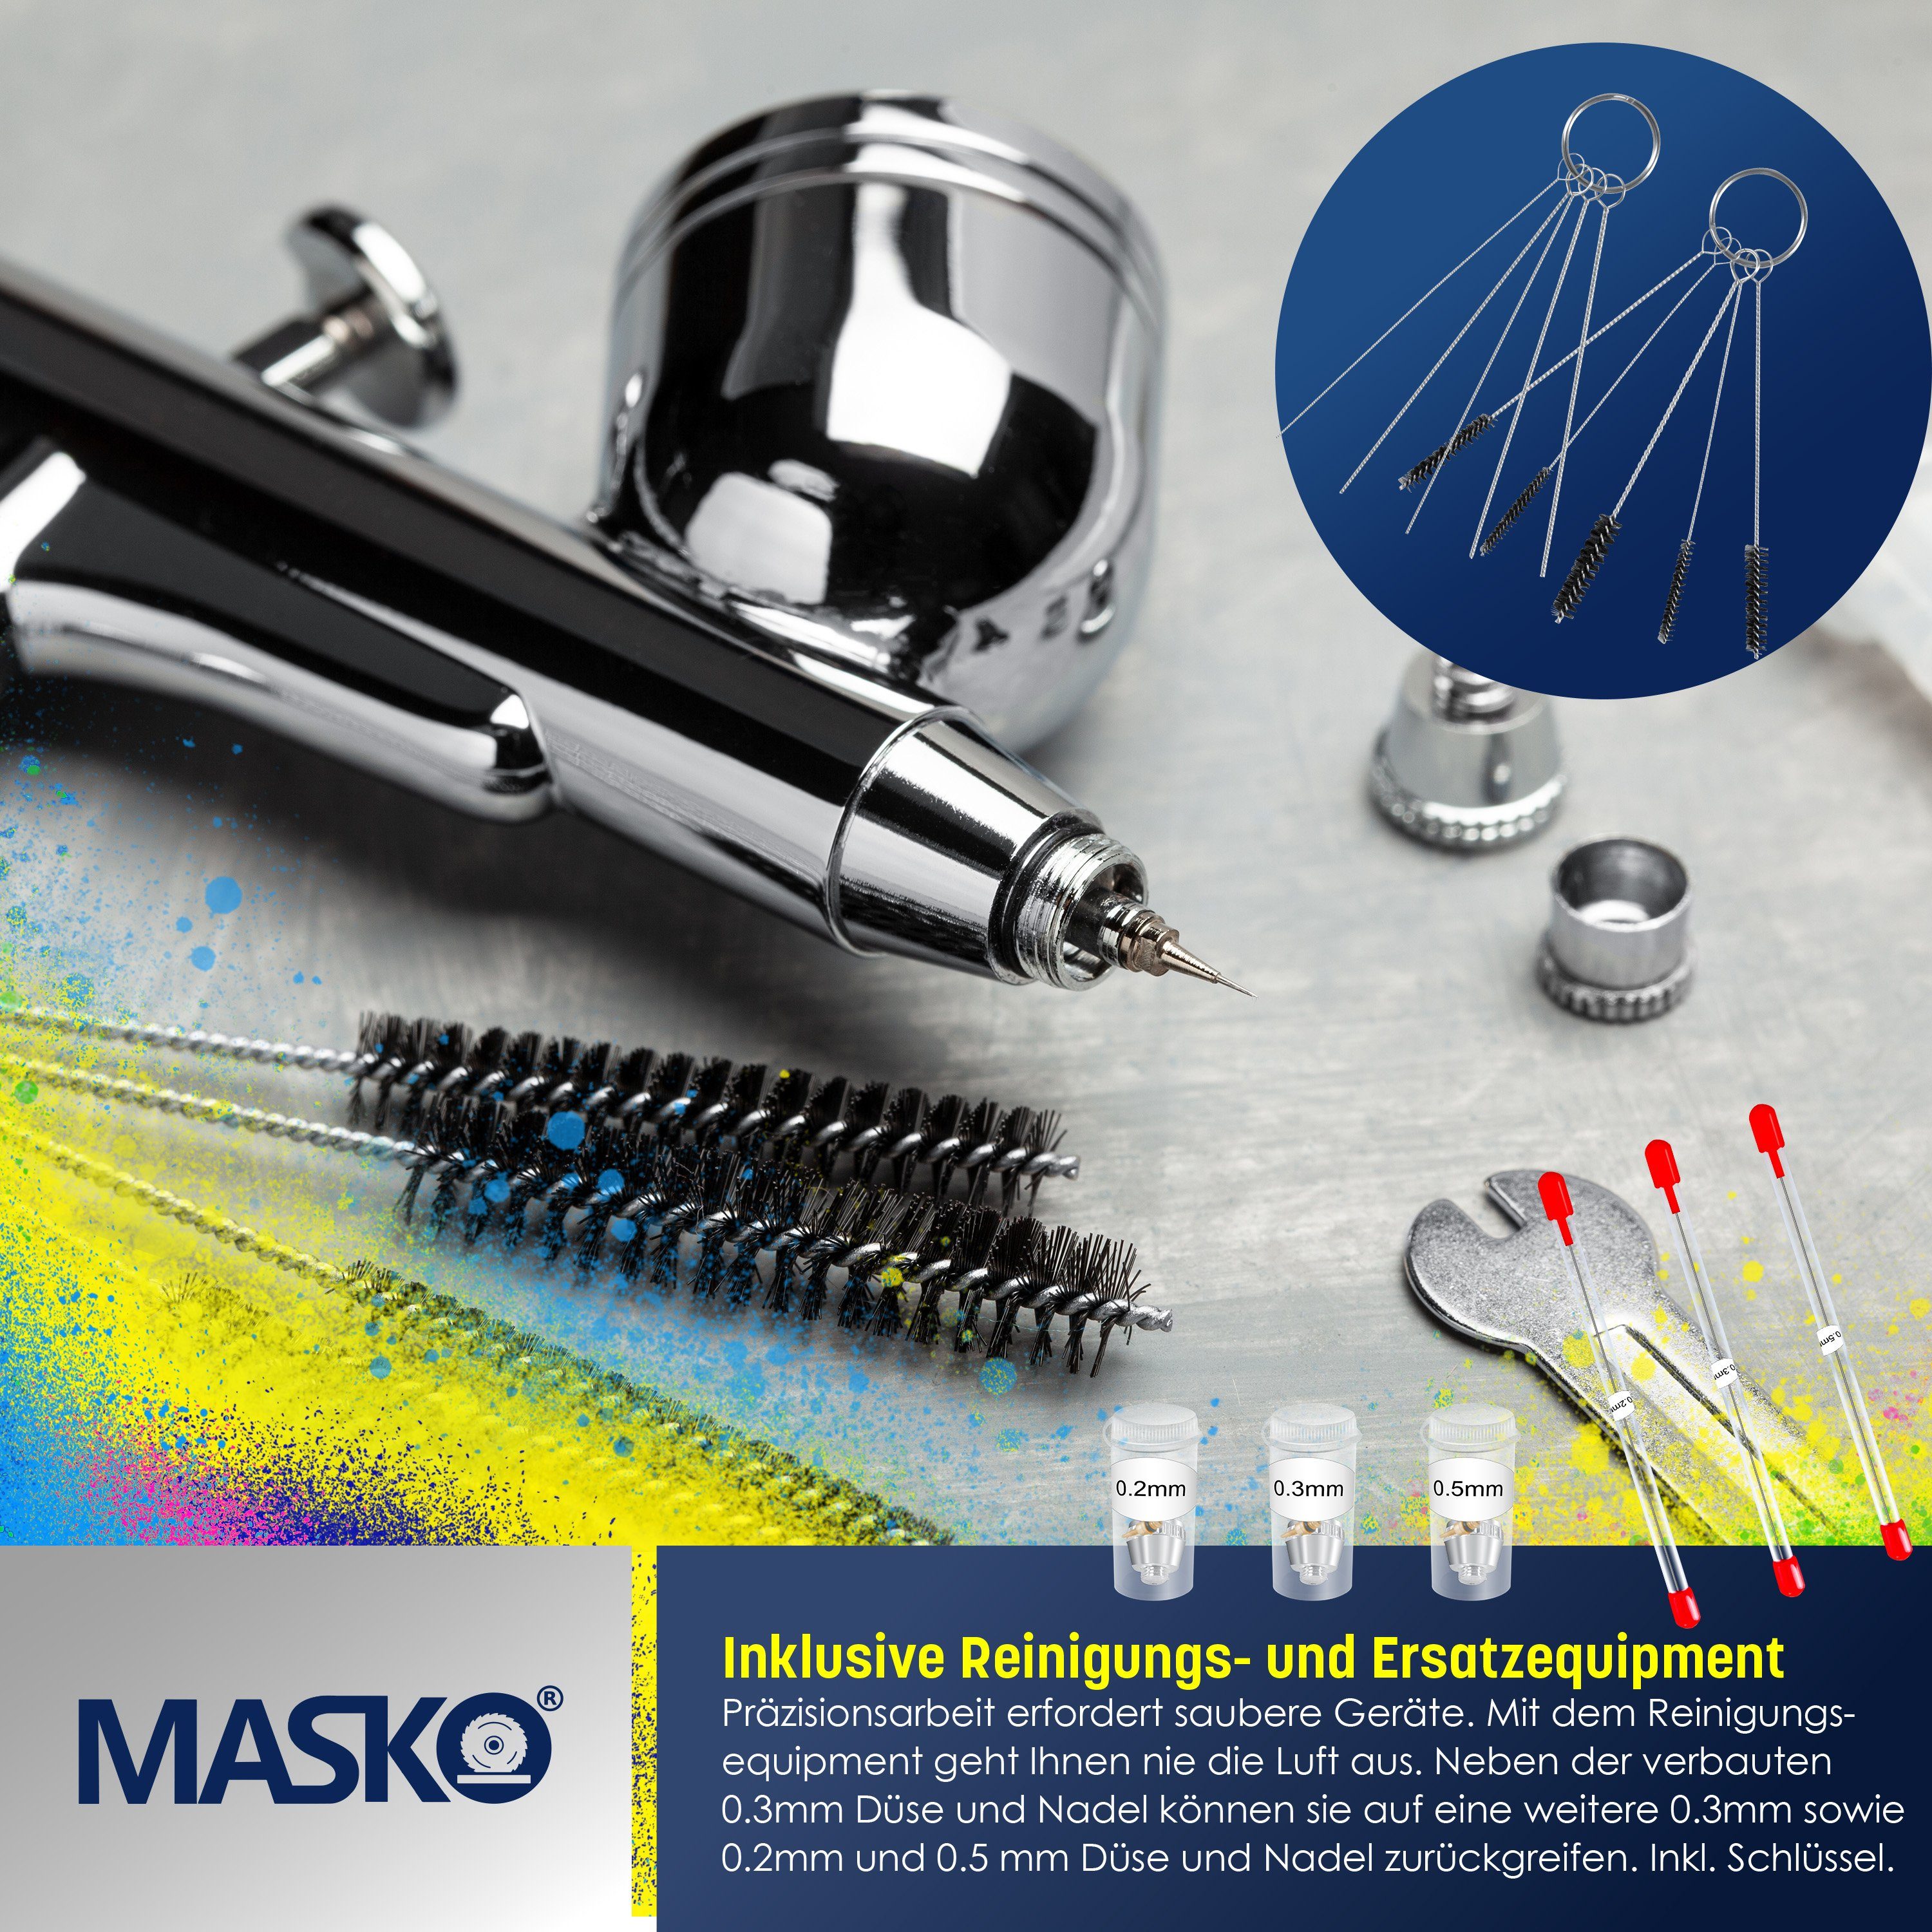 Airbrush-Set MASKO inkl. bar Farbsprühgerät, schwarz 4 mit Airbrush-Pistolen Kompressor